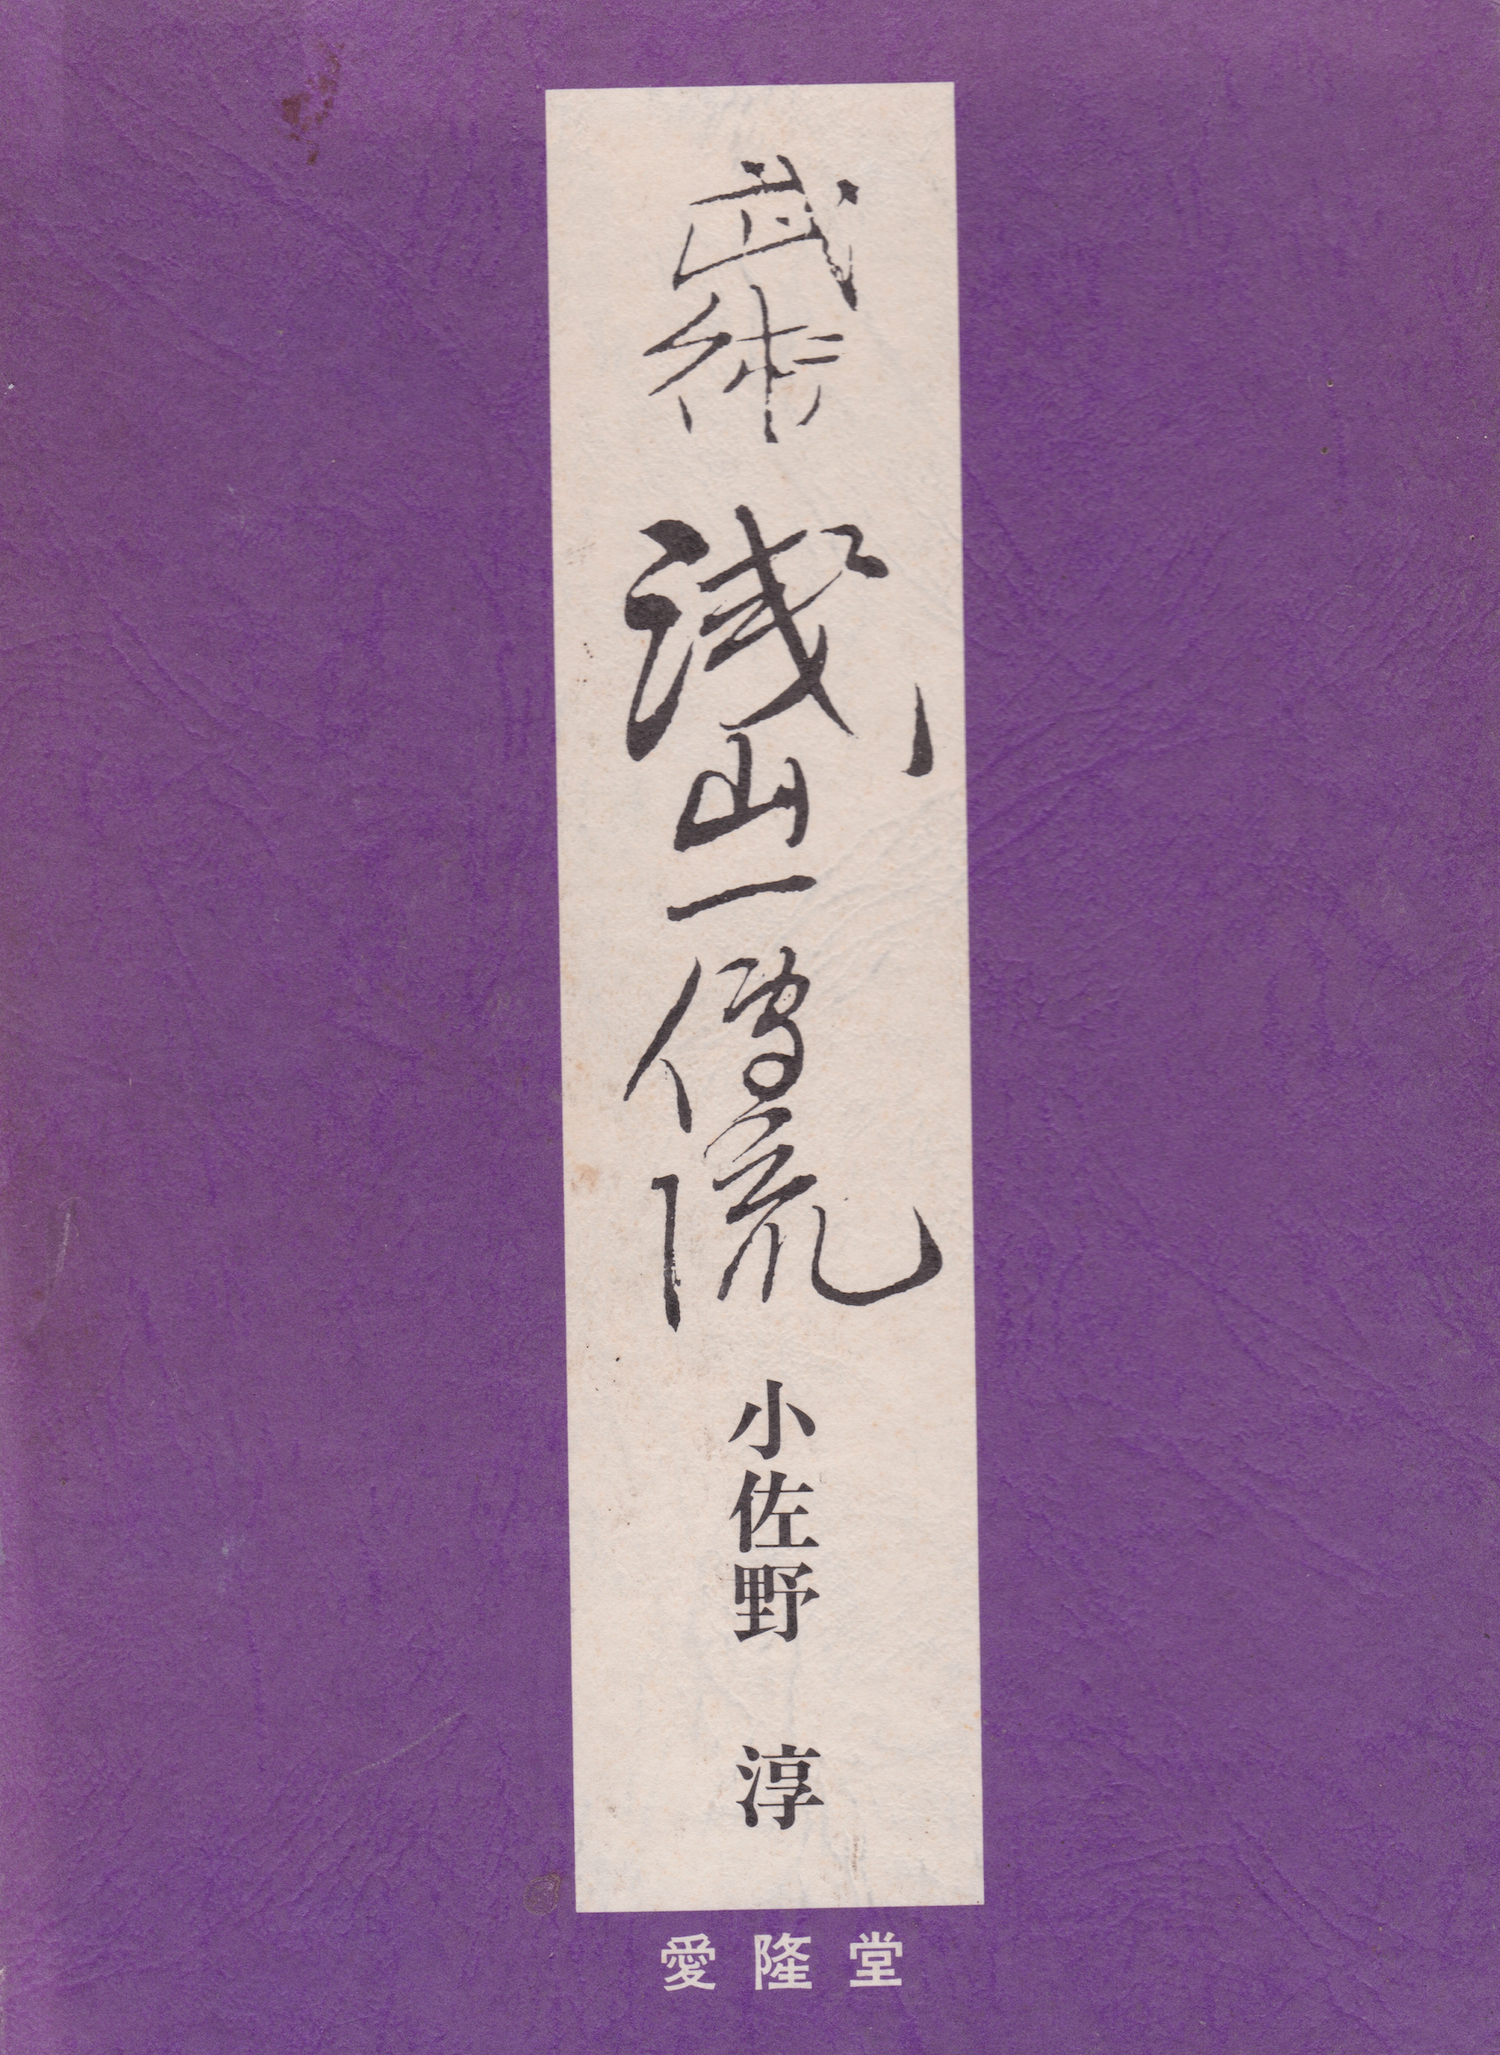 Asayama Ichiden Ryu Book by Jun Osano (Hardcover)(Preowned)